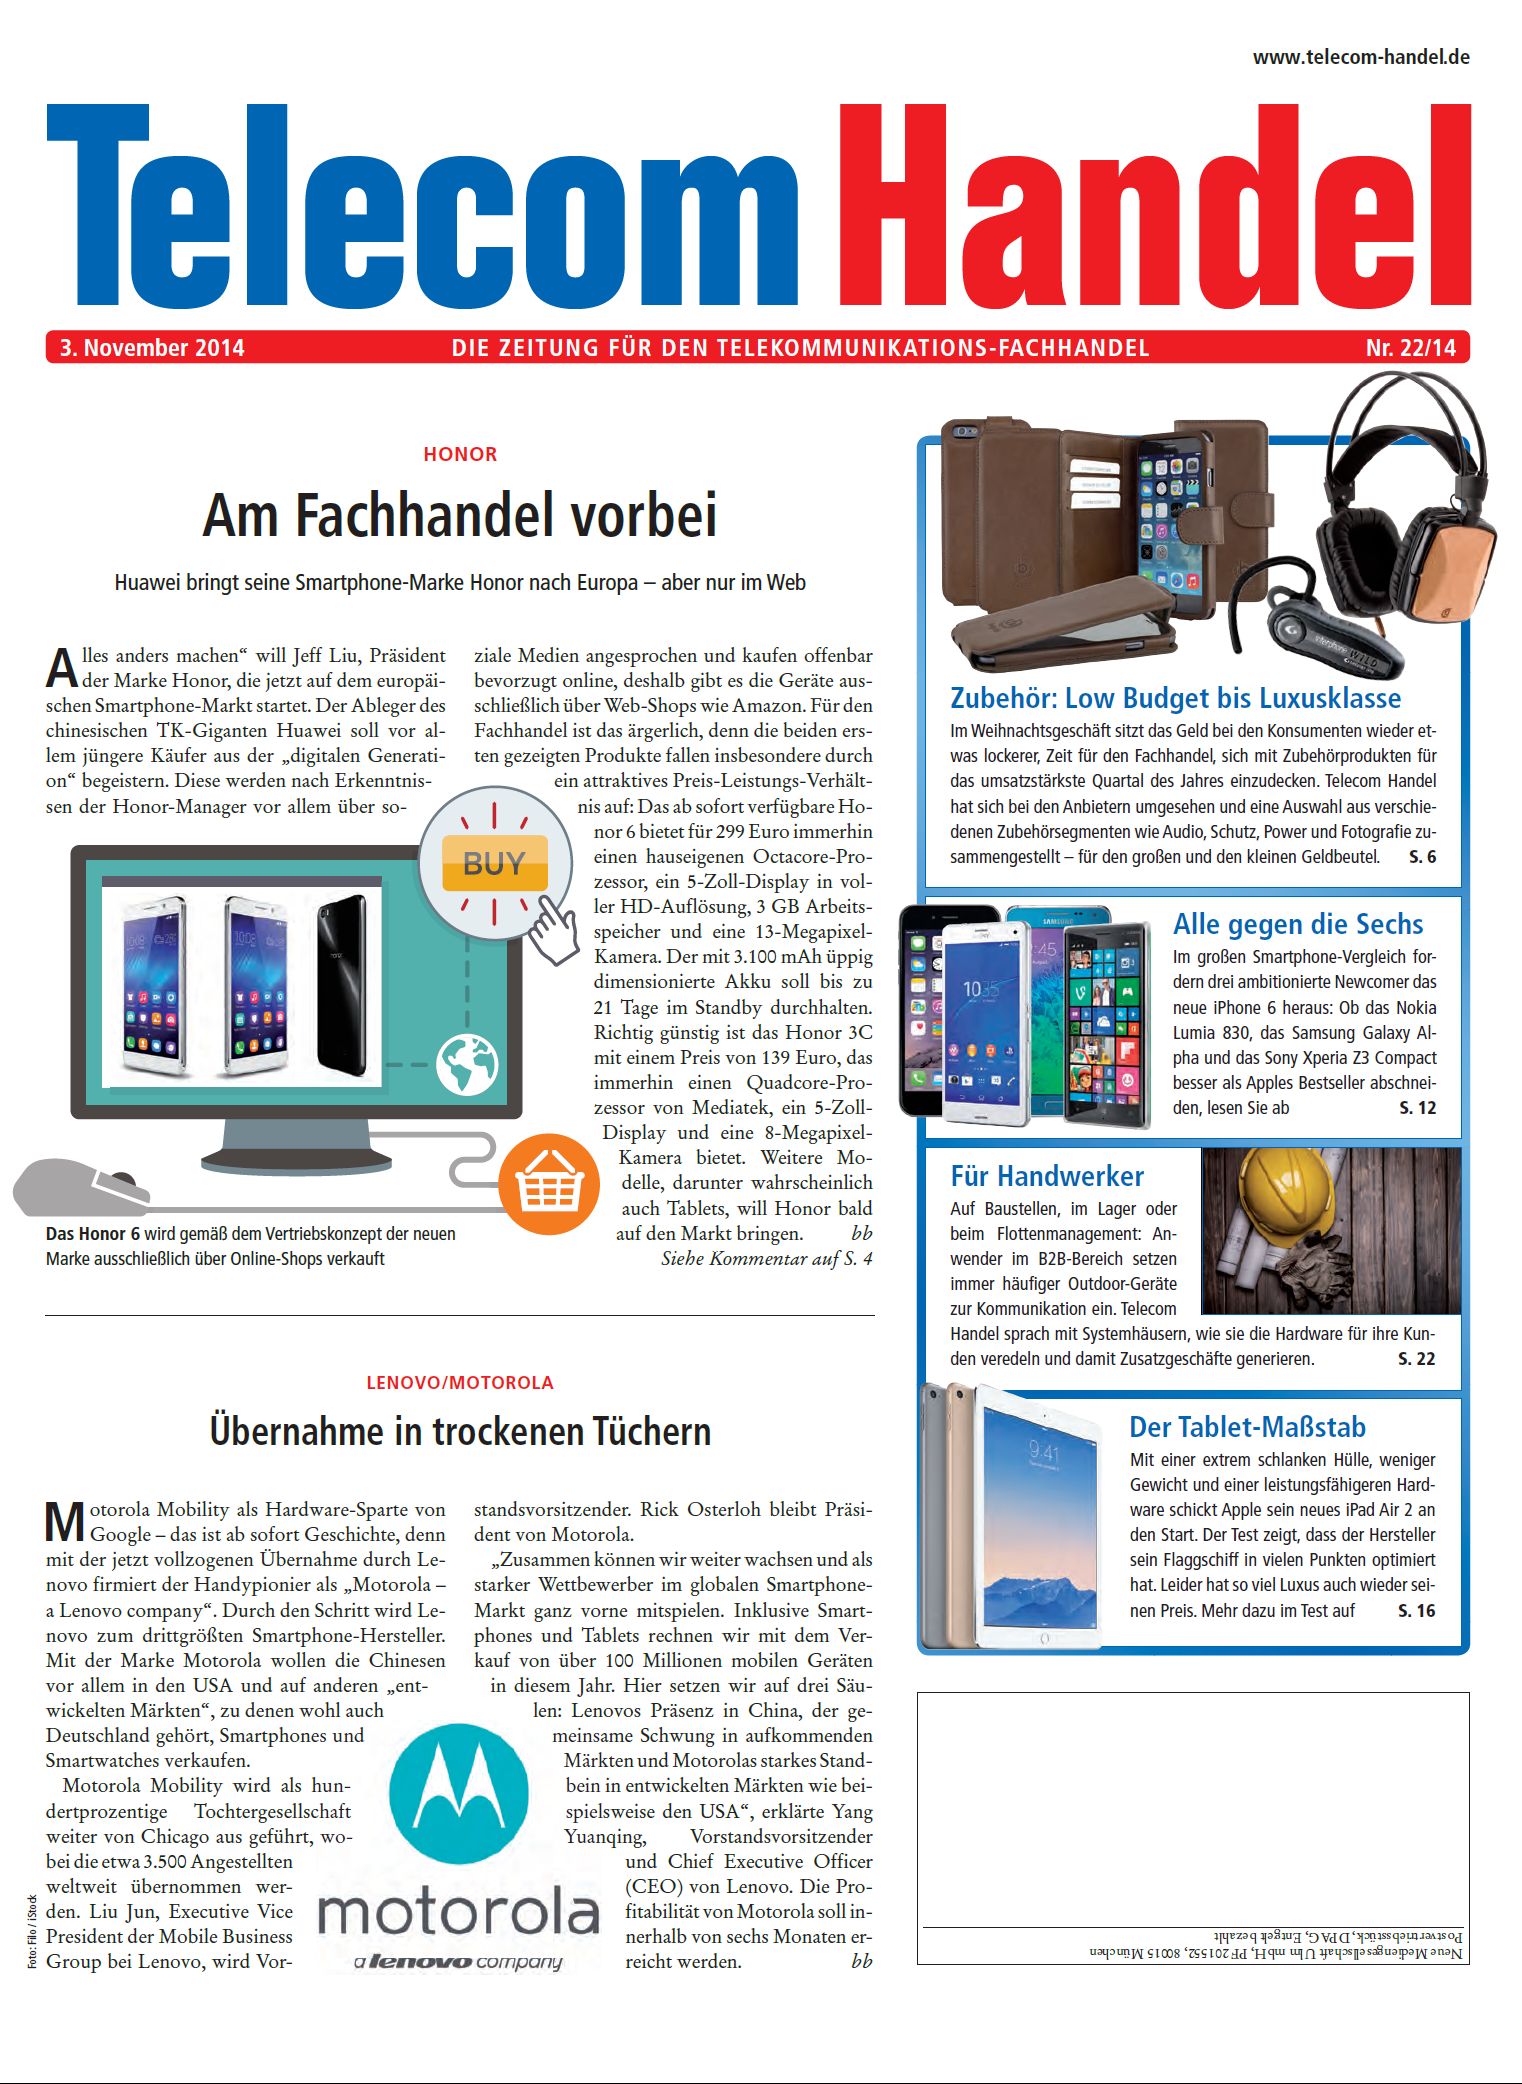 Telecom Handel Ausgabe 22/2014